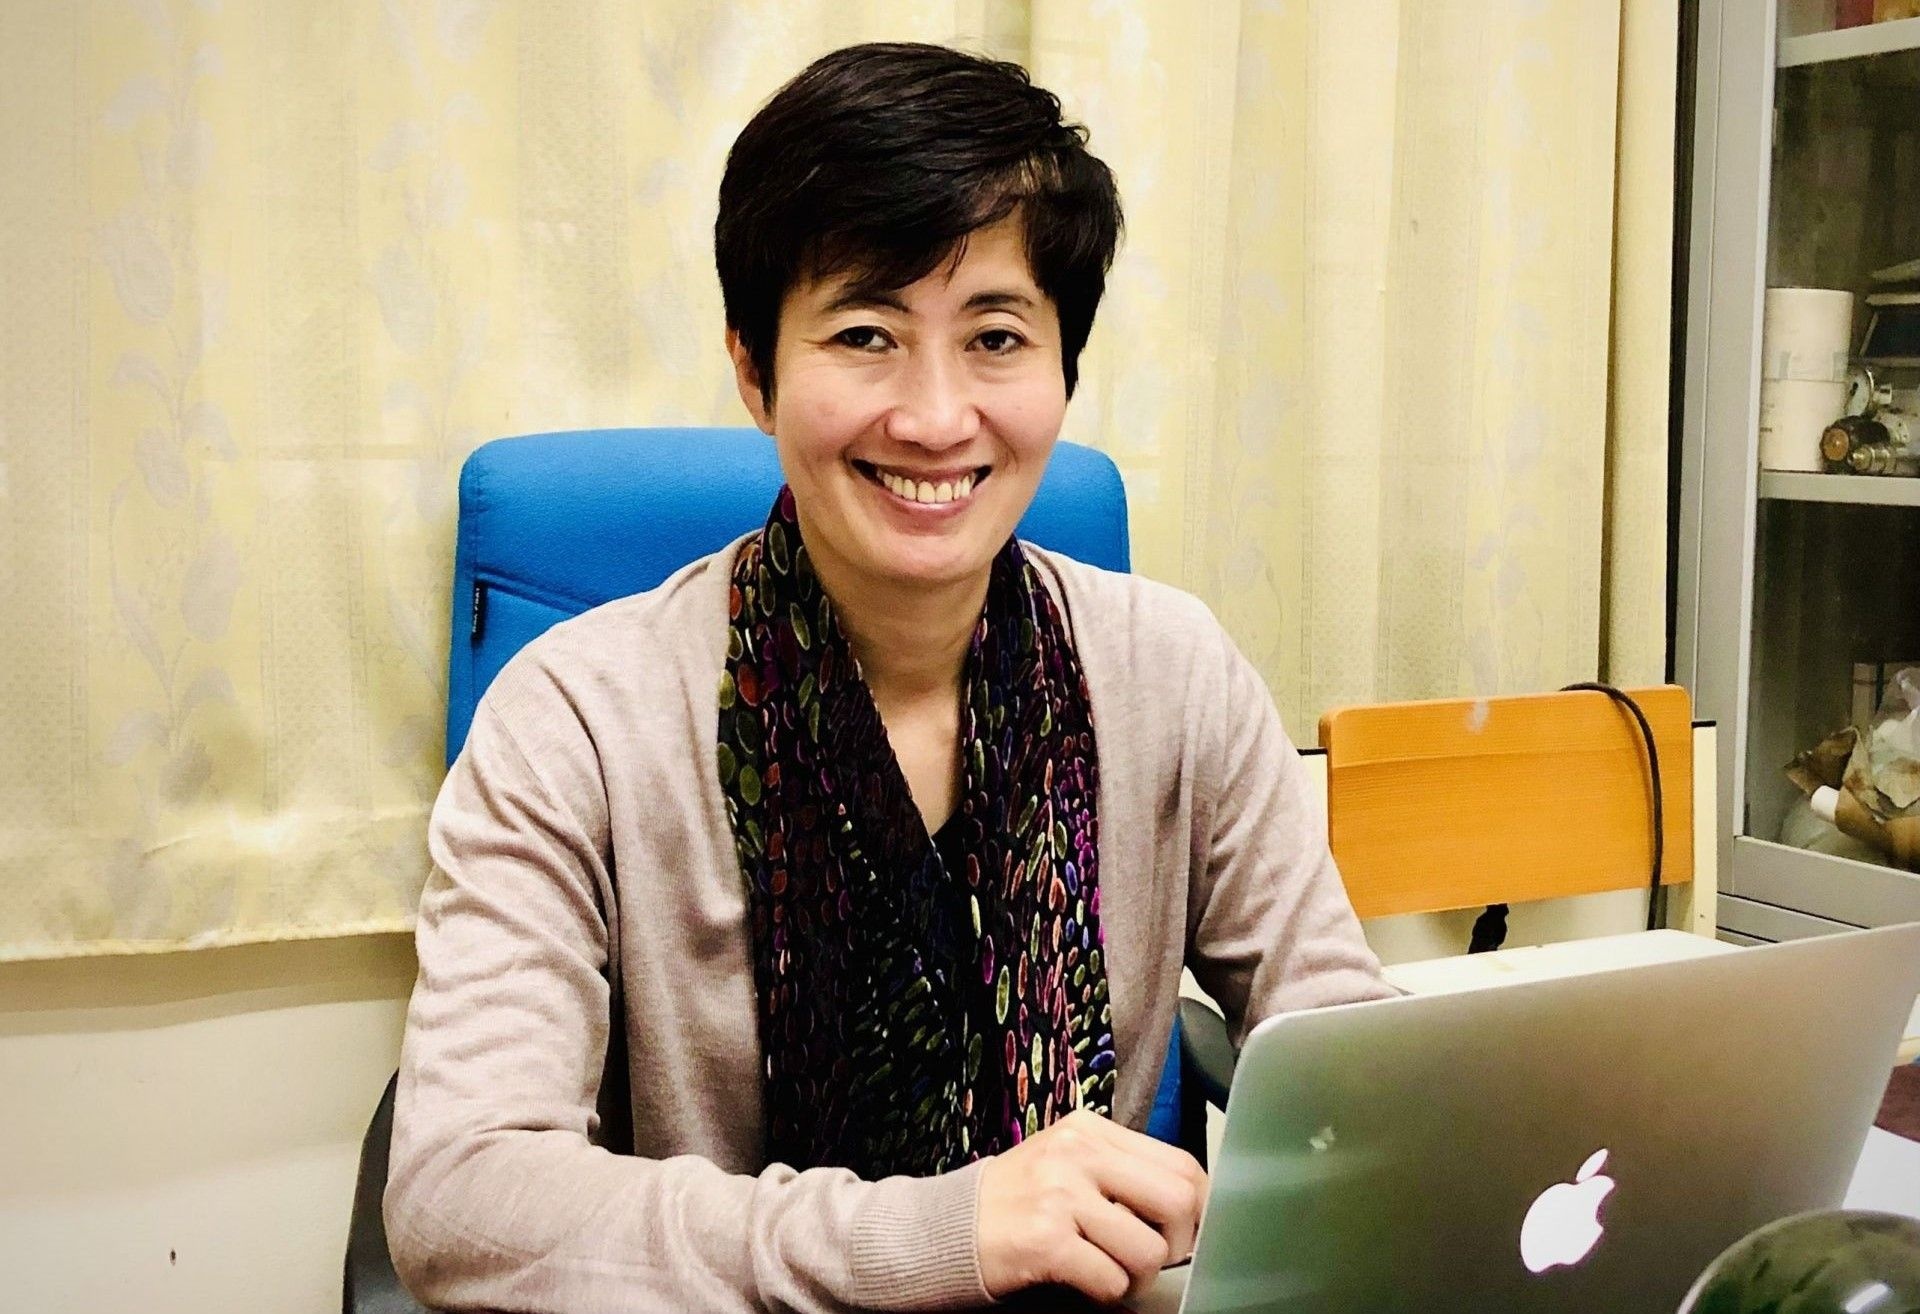 PGS.TS Nguyễn Minh Tân: Nghiên cứu khoa học để đóng góp cho cộng đồng, xã hội